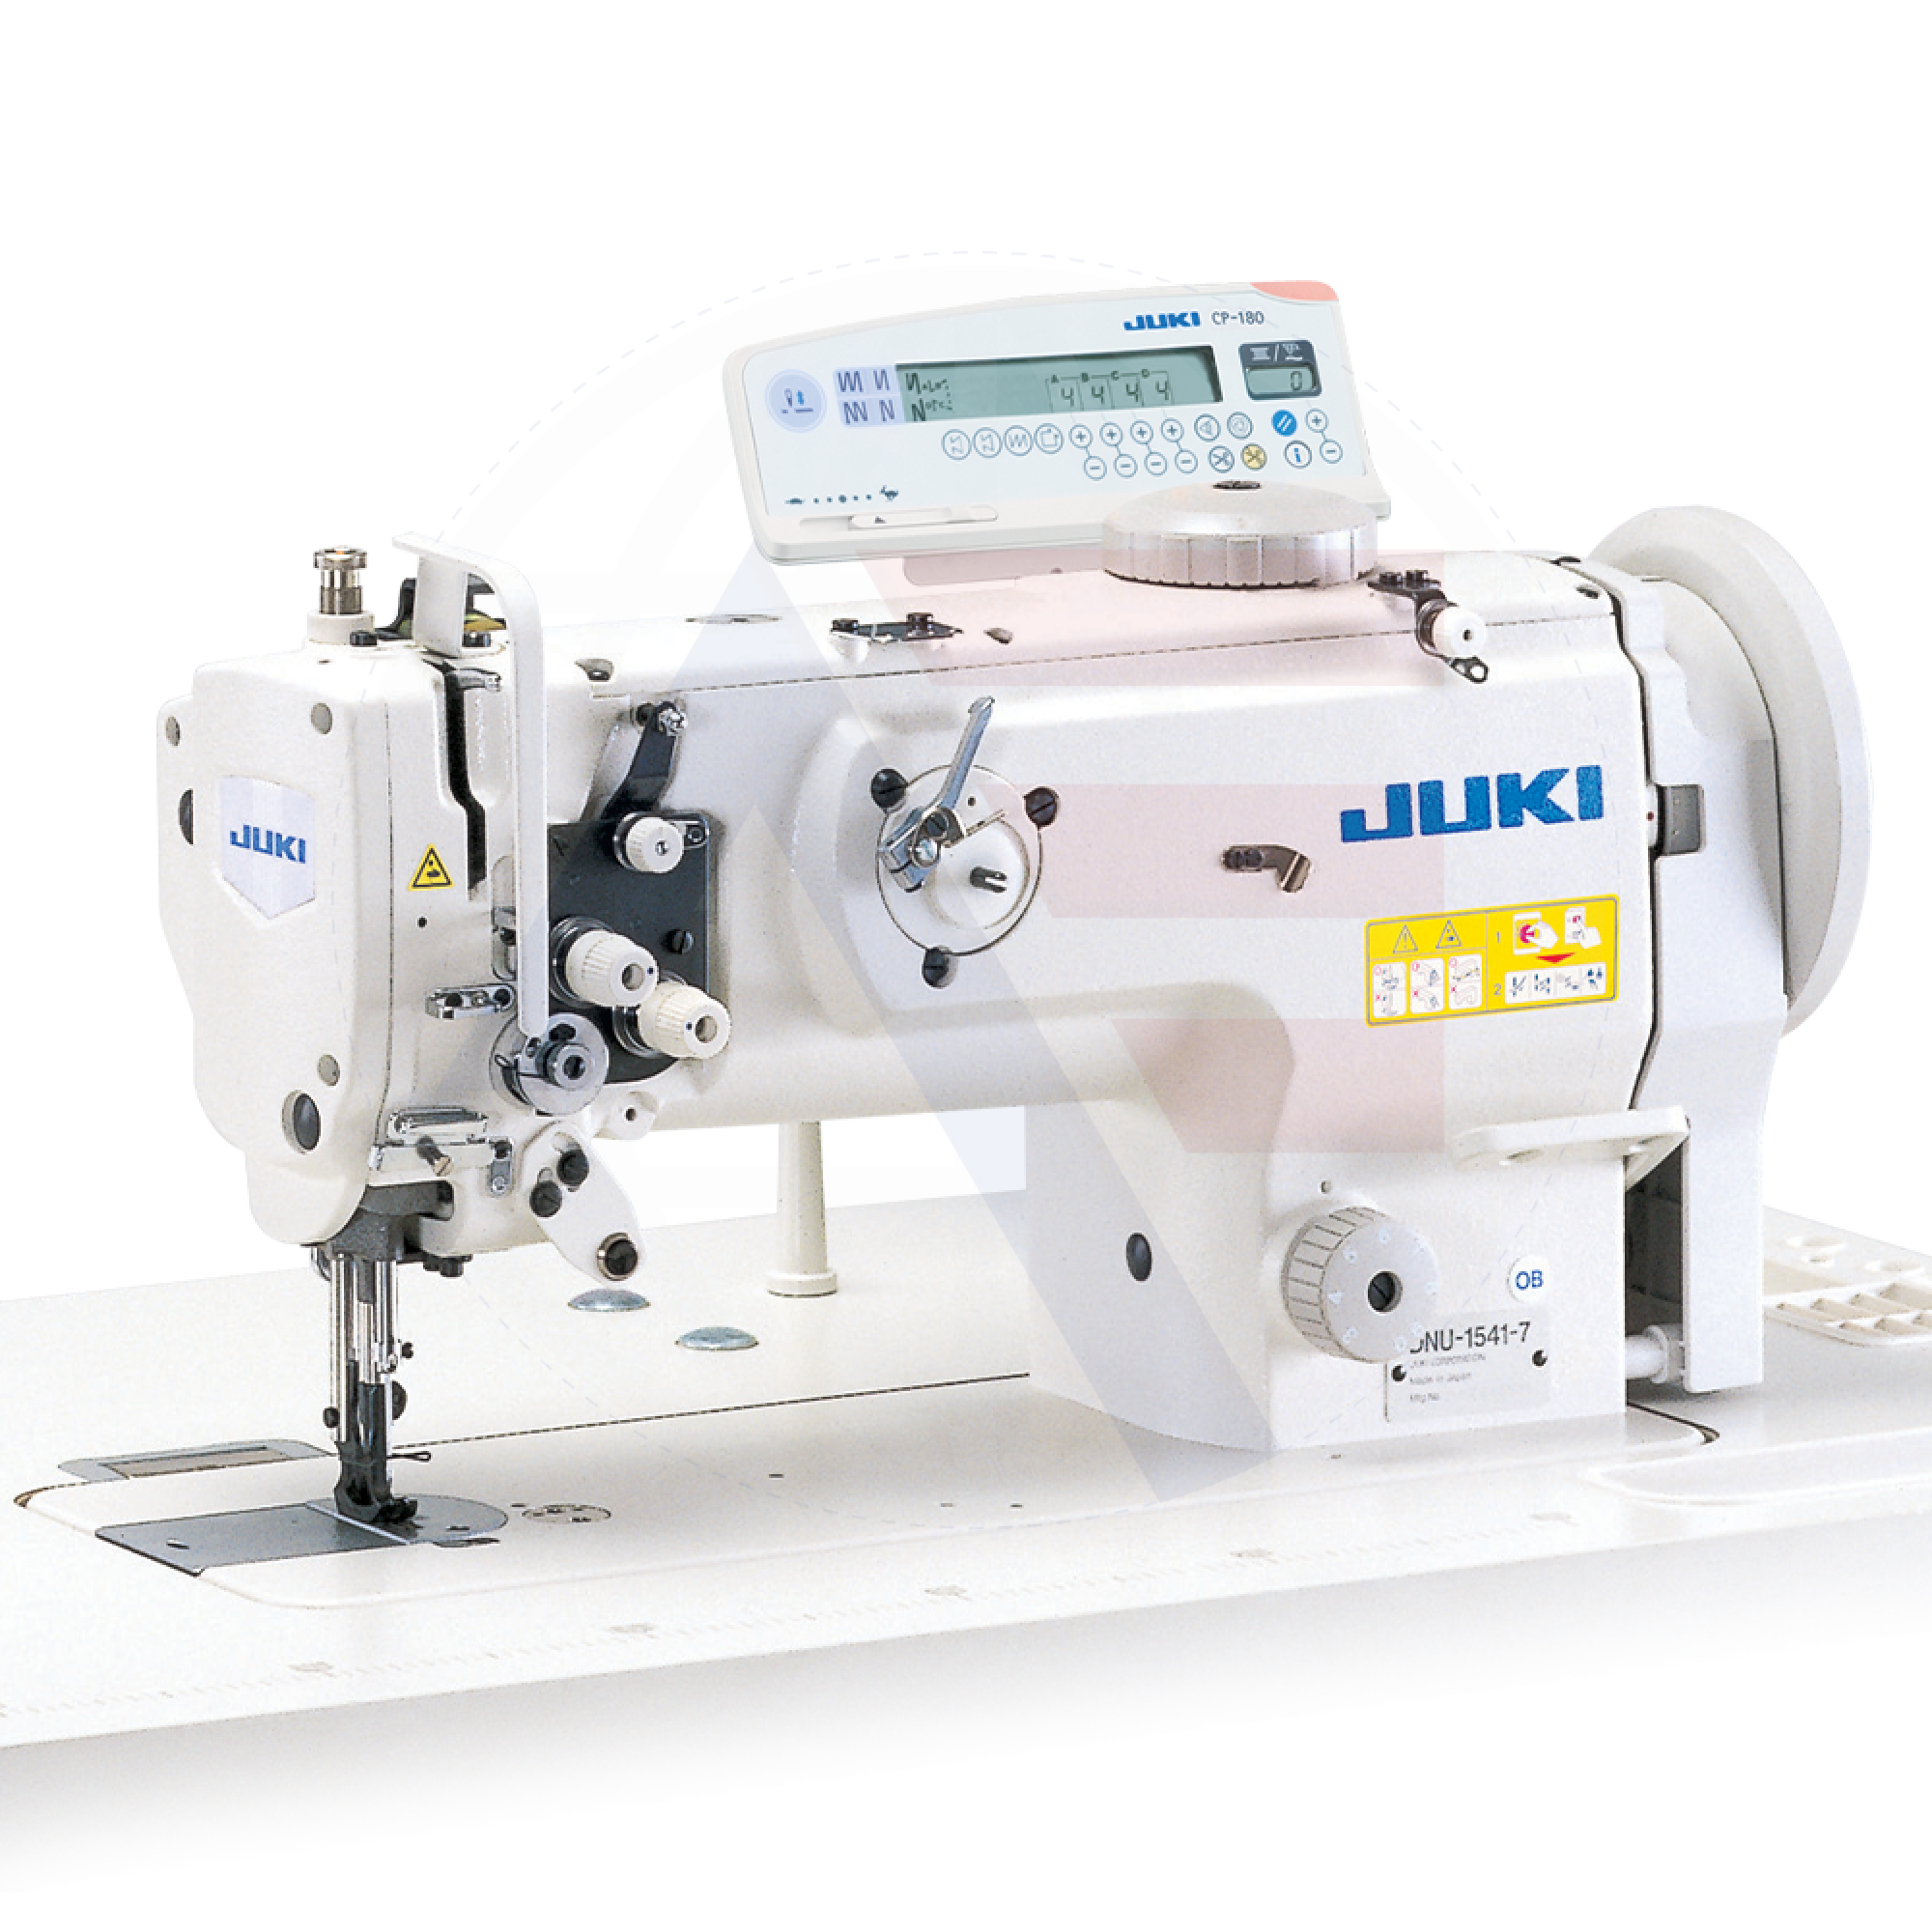 Juki Dnu-1541-7 1-Needle Lockstitch Machine Sewing Machines